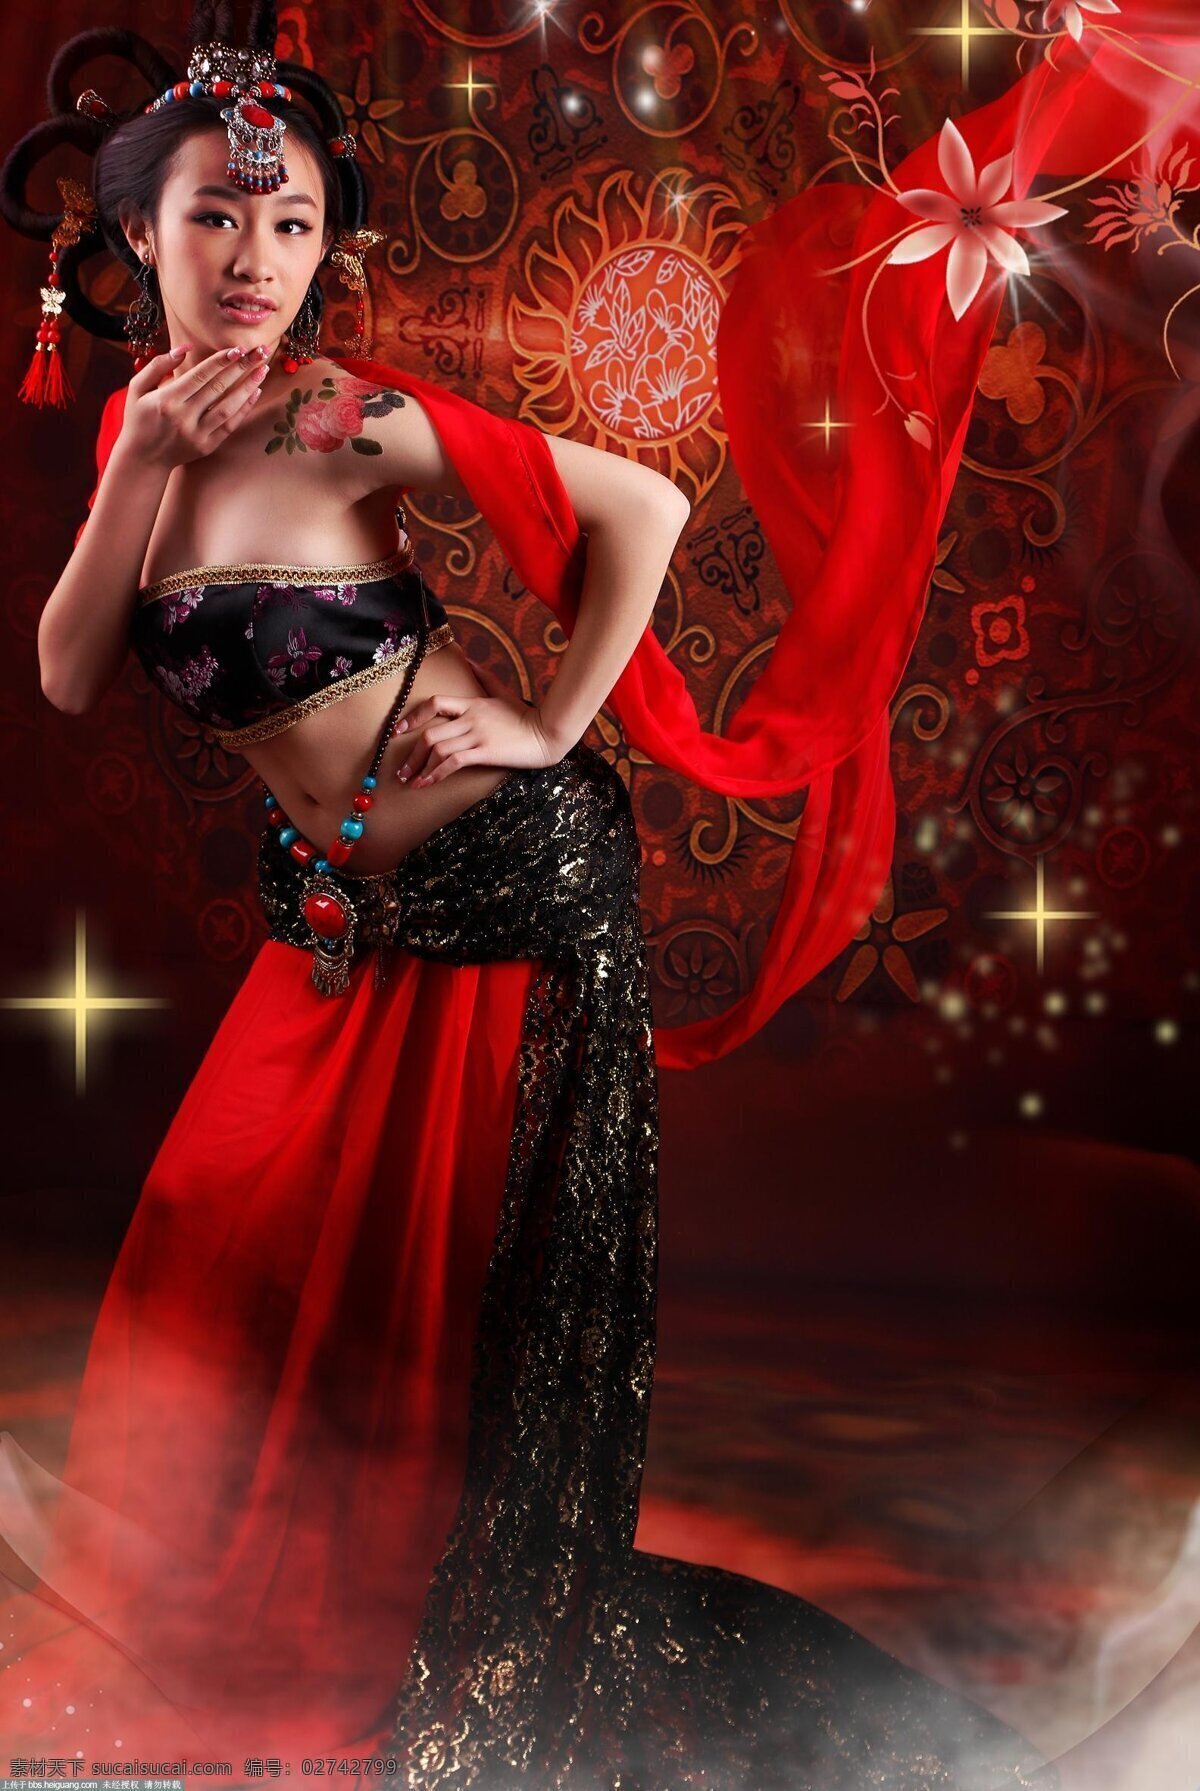 中国古典美女 古典美女图片 红色丝绸 古风美女 复古美女 性感 人物写真 人物图库